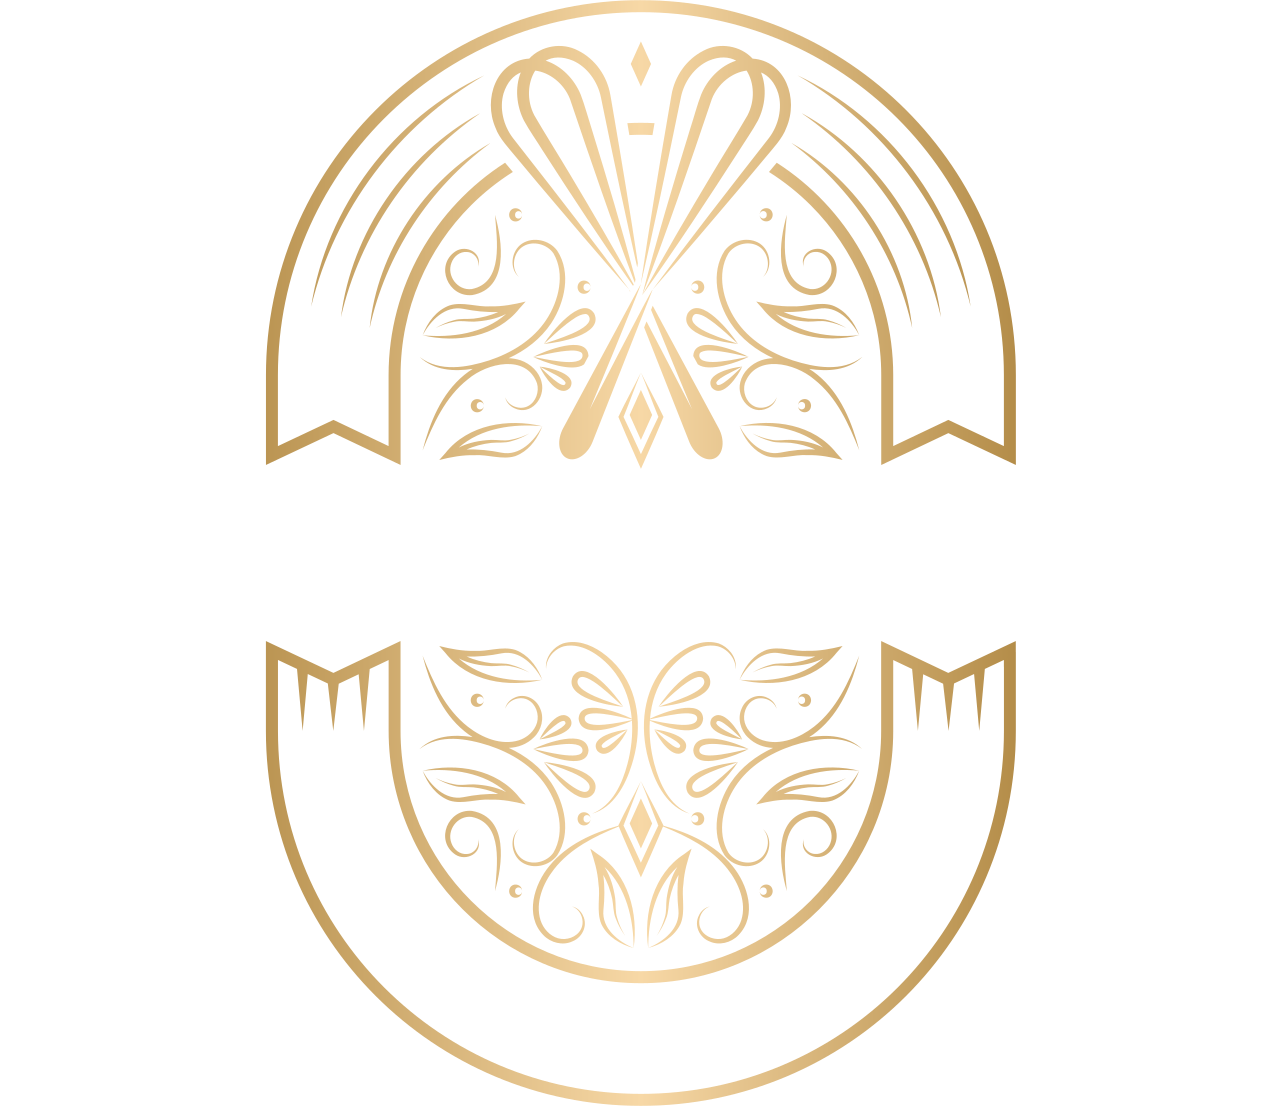 Dapoer mamayo's logo